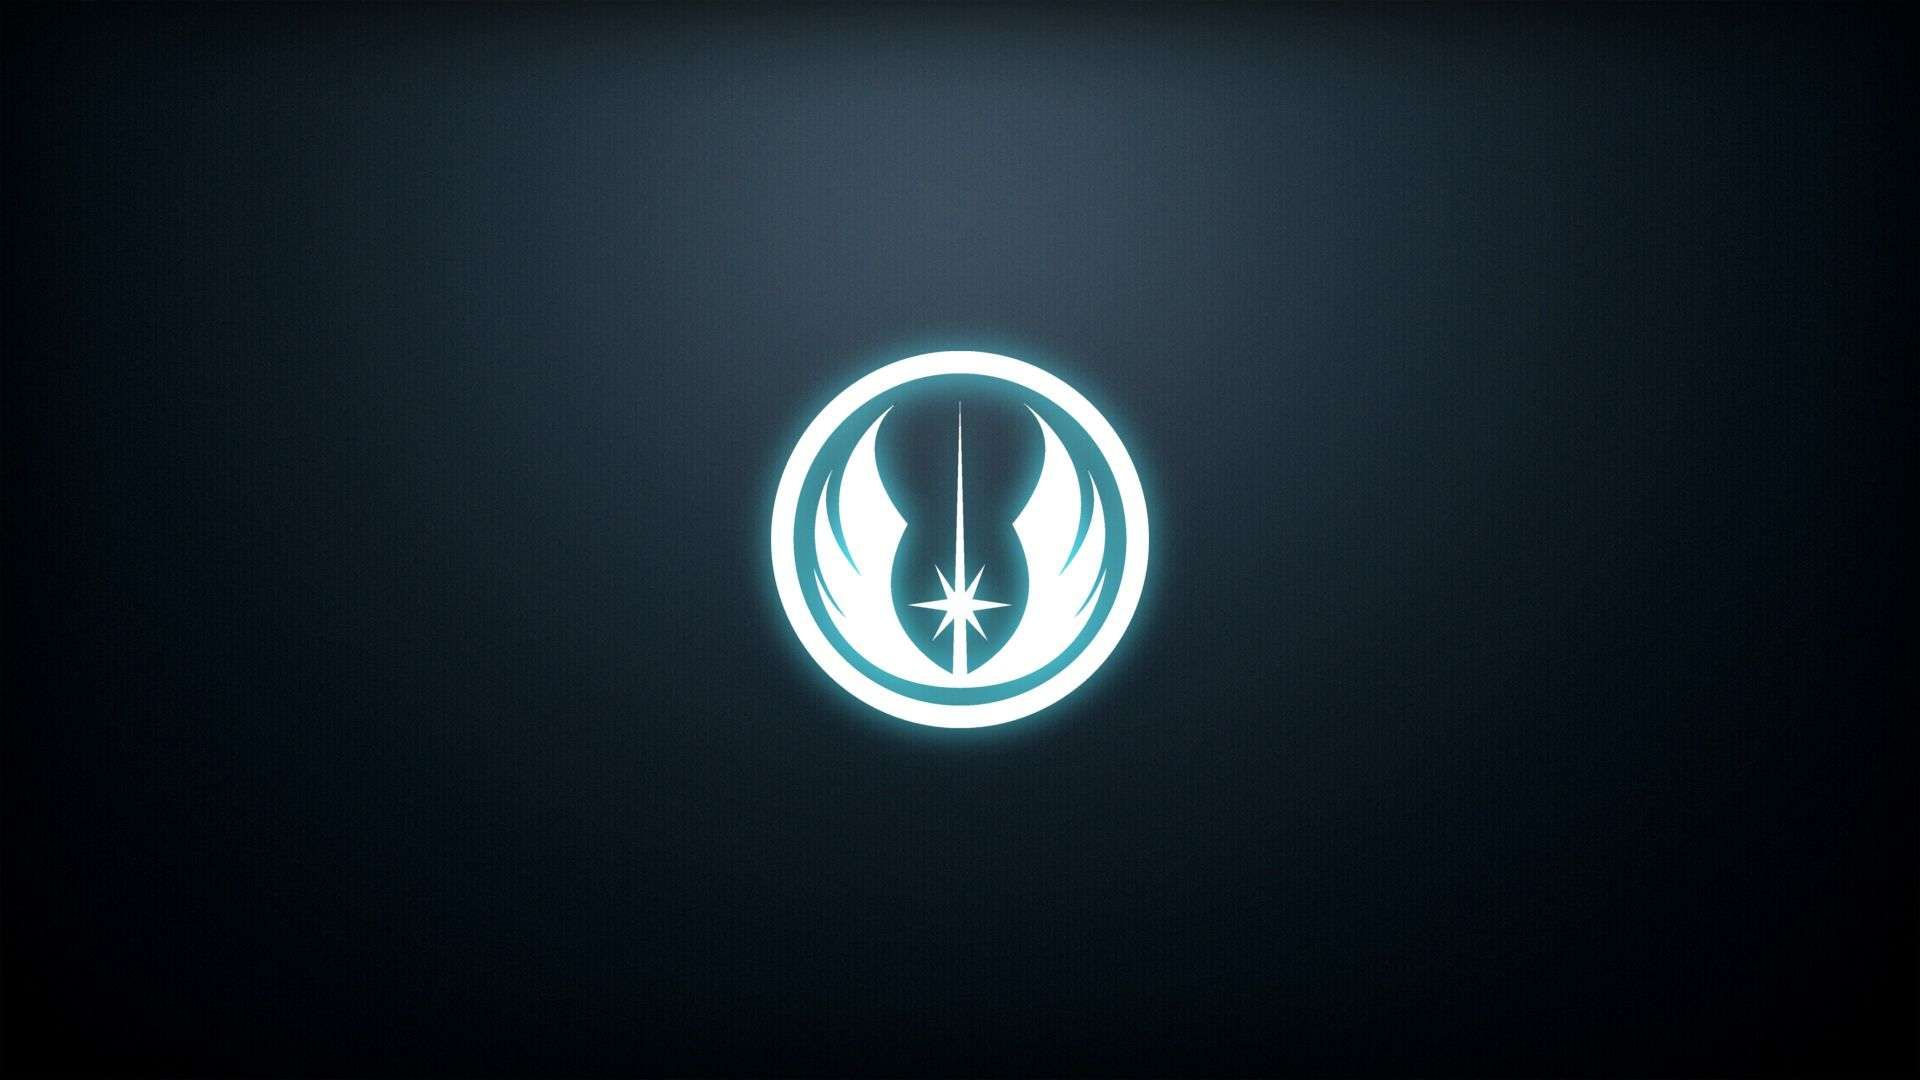 HD Wallpaper. Jedi symbol, Star wars